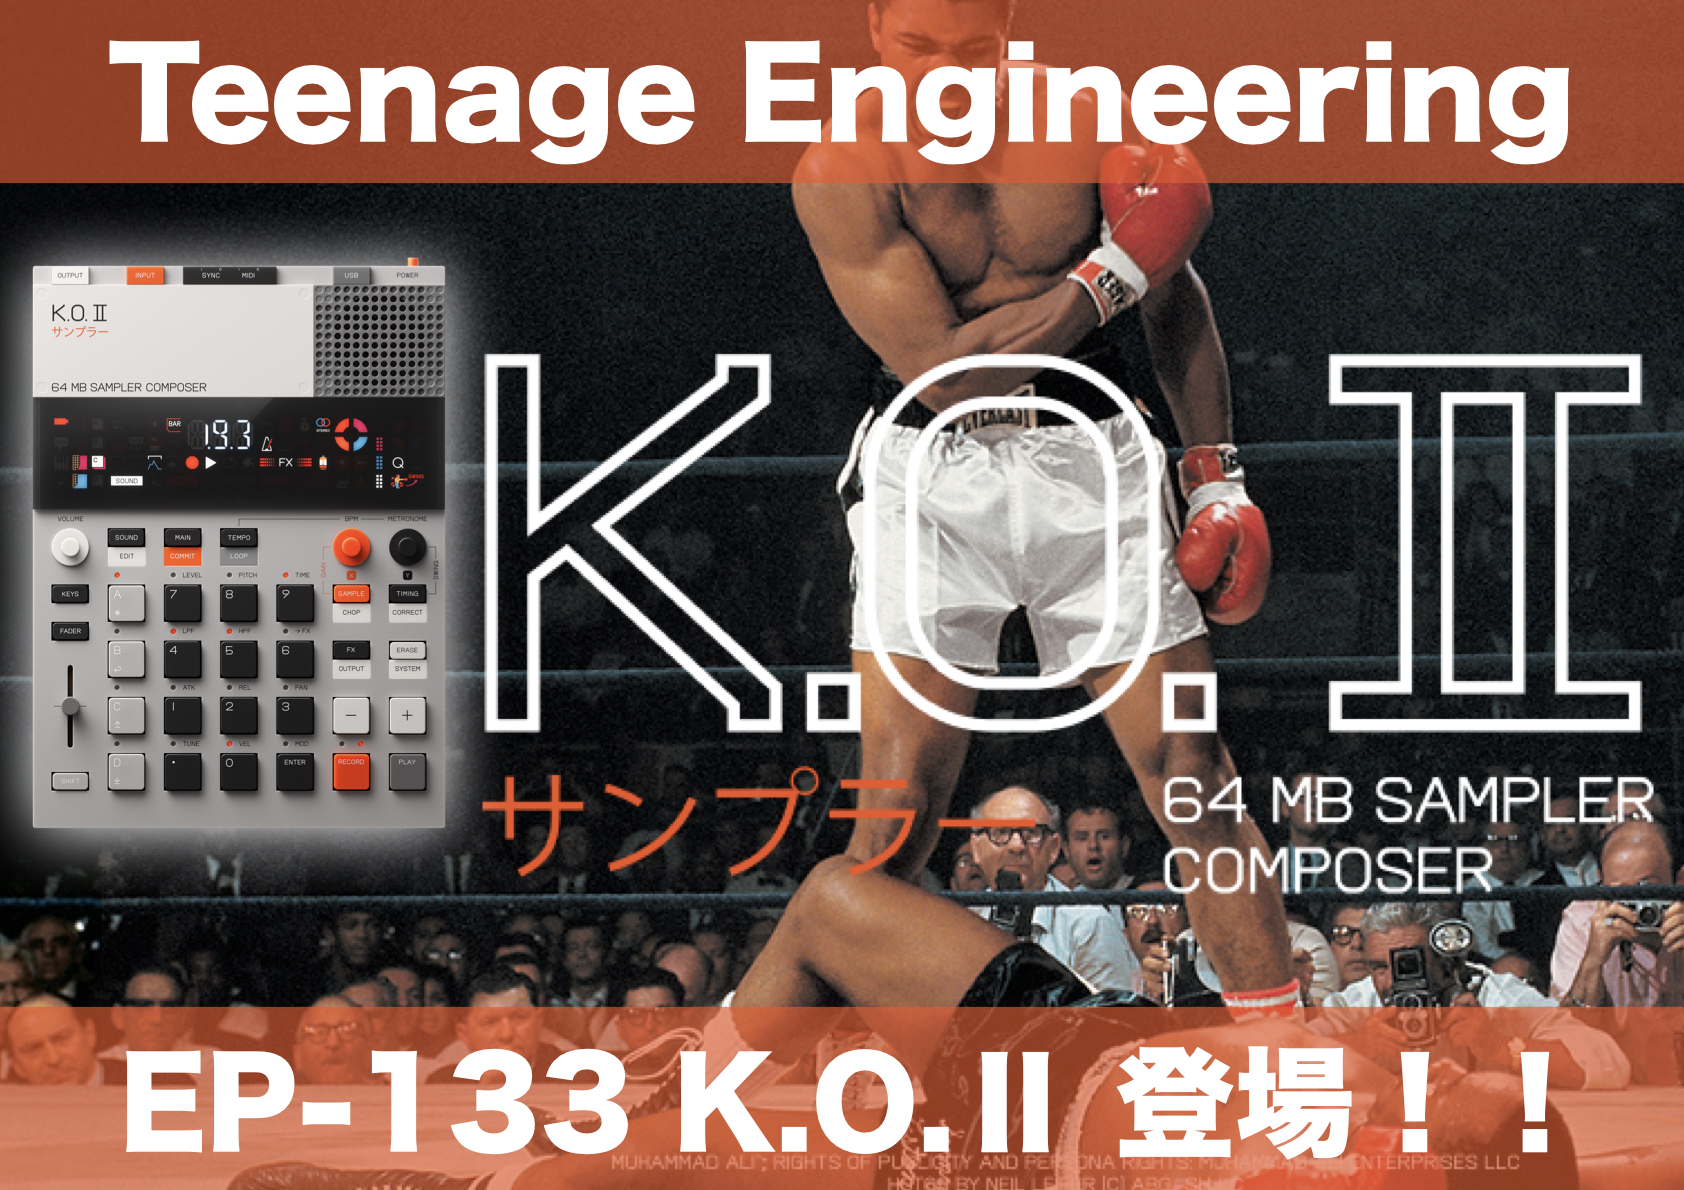 Teenage Engineeringより、またユニークな製品EP-133 K.O.Ⅱが！ ※メーカー代理店から納期に関するアナウンスがございます→こちら 人気のガジェットマシンPocket Operatorシリーズの中でも一際高い人気を誇るサンプラーPO-133 K.O.をベースにしつつ、より本格 […]